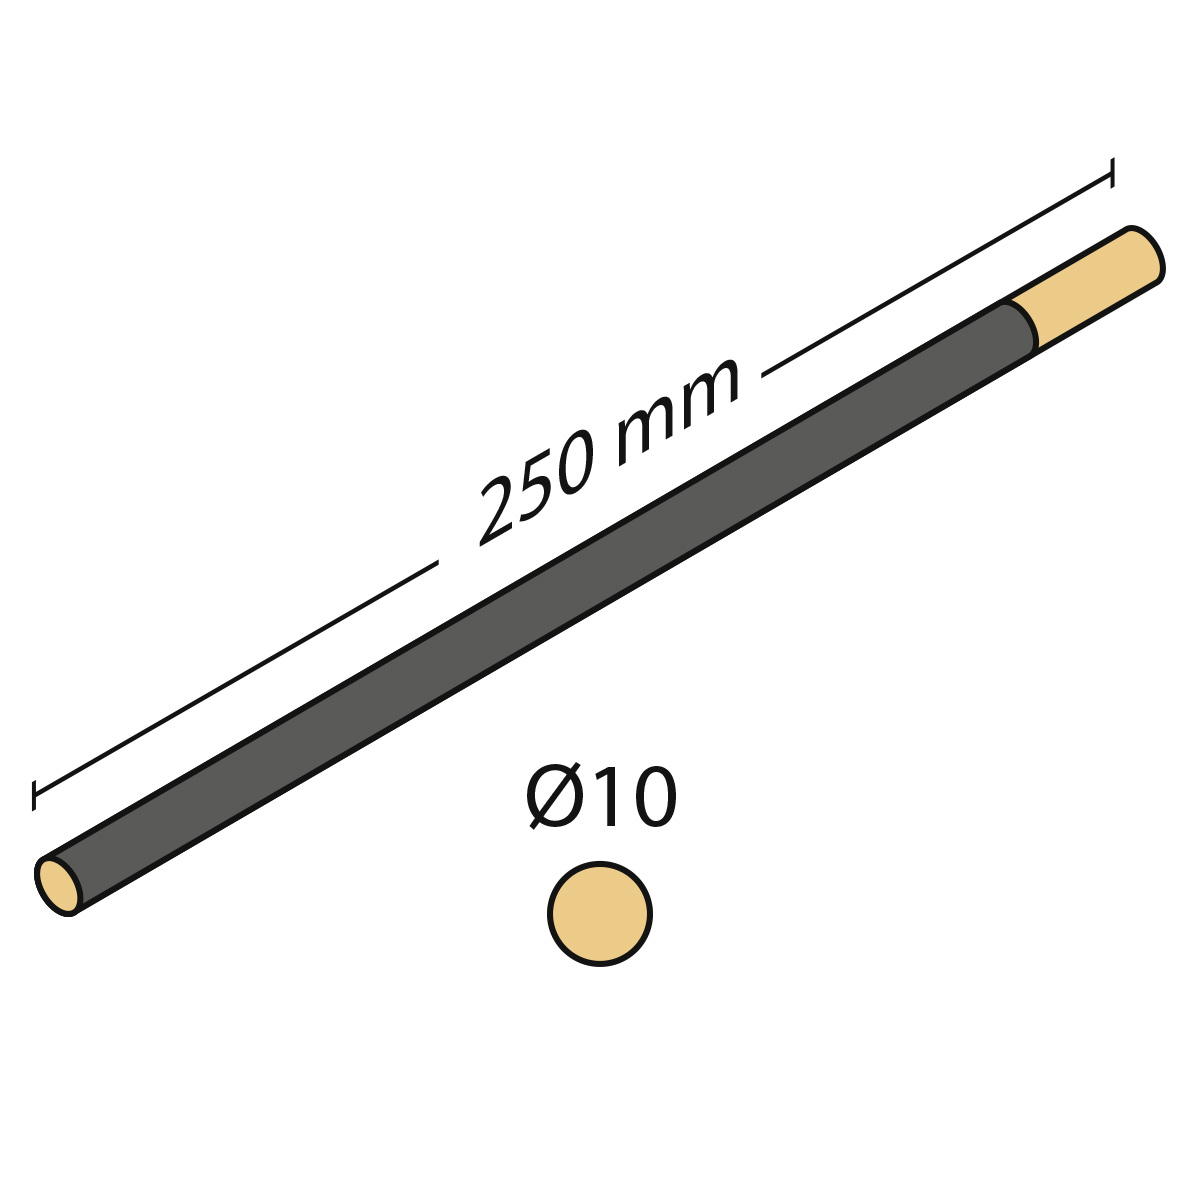 Cabron d'émeri rond, longueur 250 mm, Ø 10 mm, très fin, grain 320